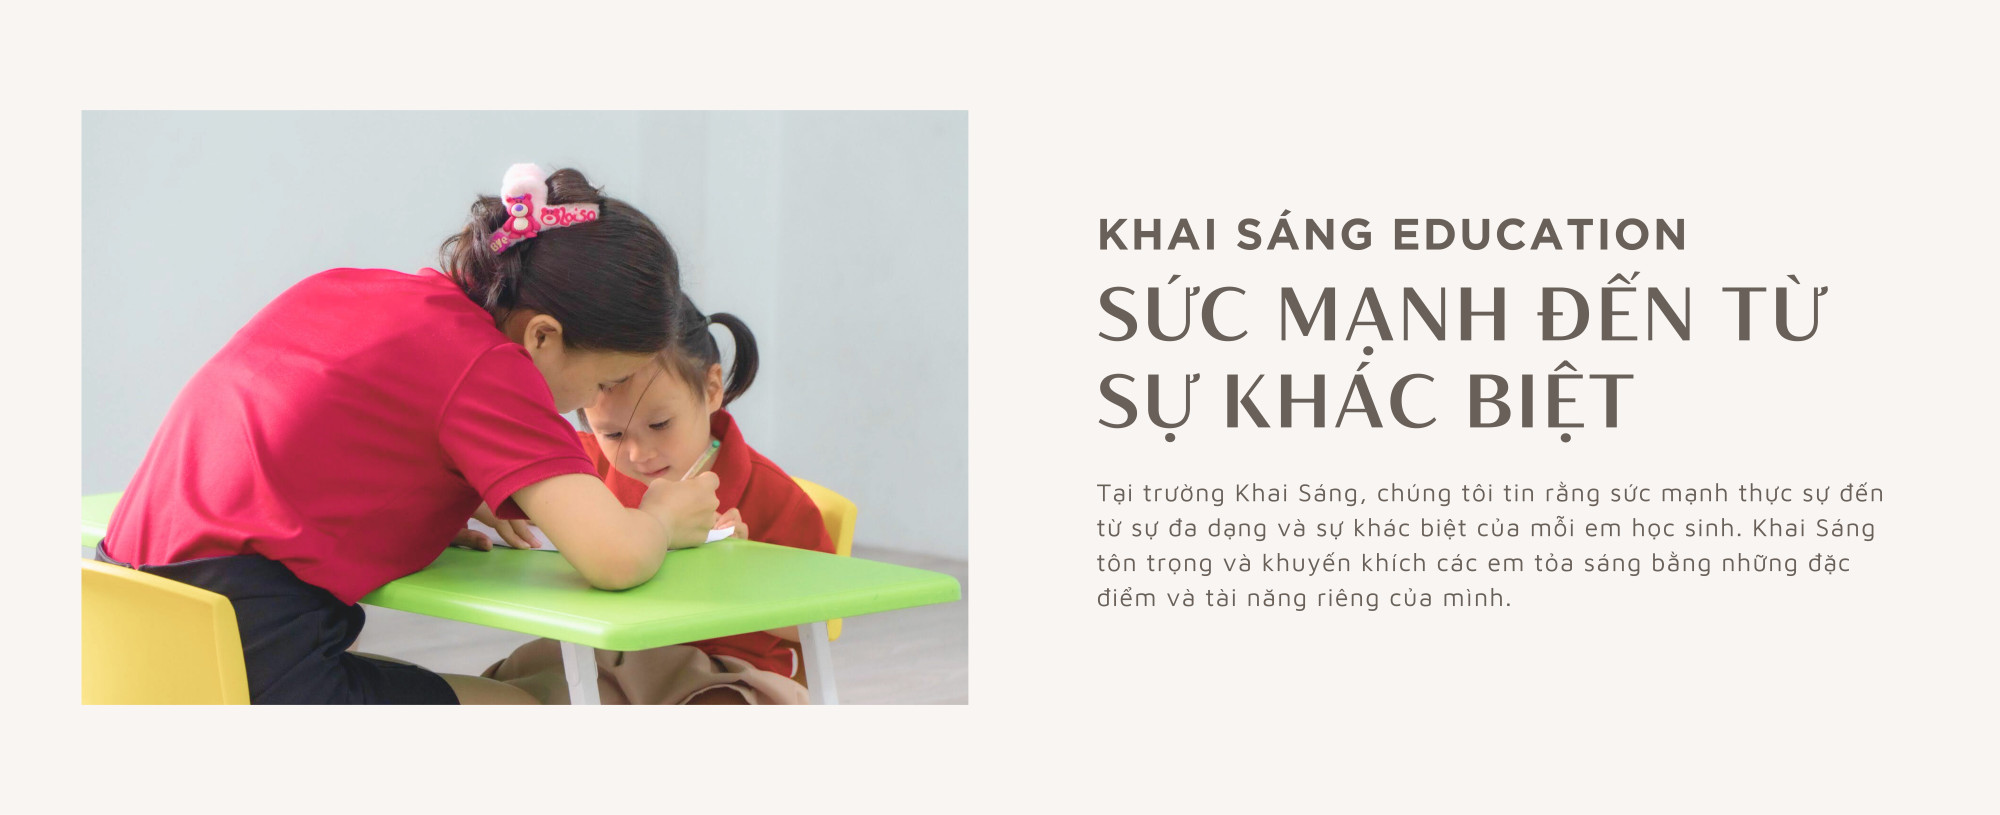 Website Khai sng2